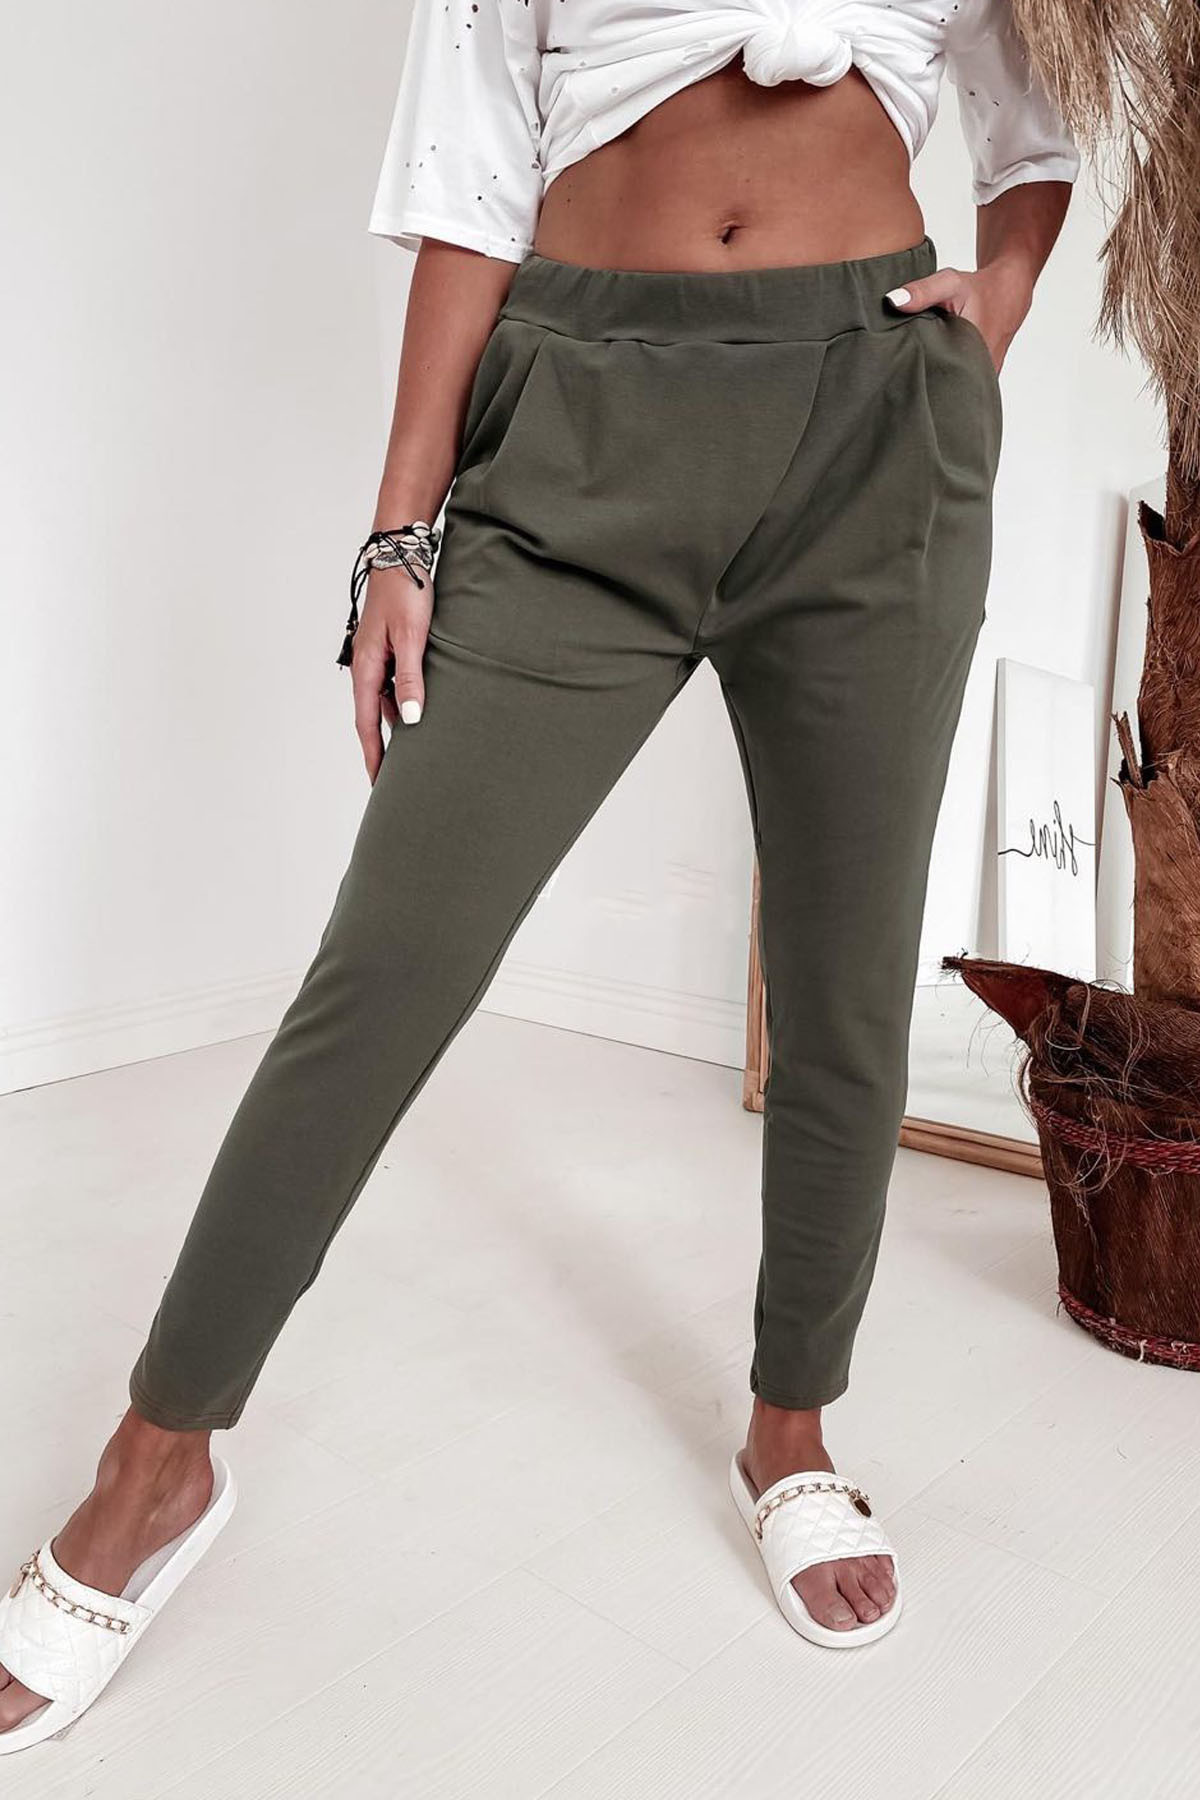 Pantaloni de dama | VMzona.com - Îmbrăcăminte pentru femei bărbați, îmbrăcăminte accesorii prețuri accesibile